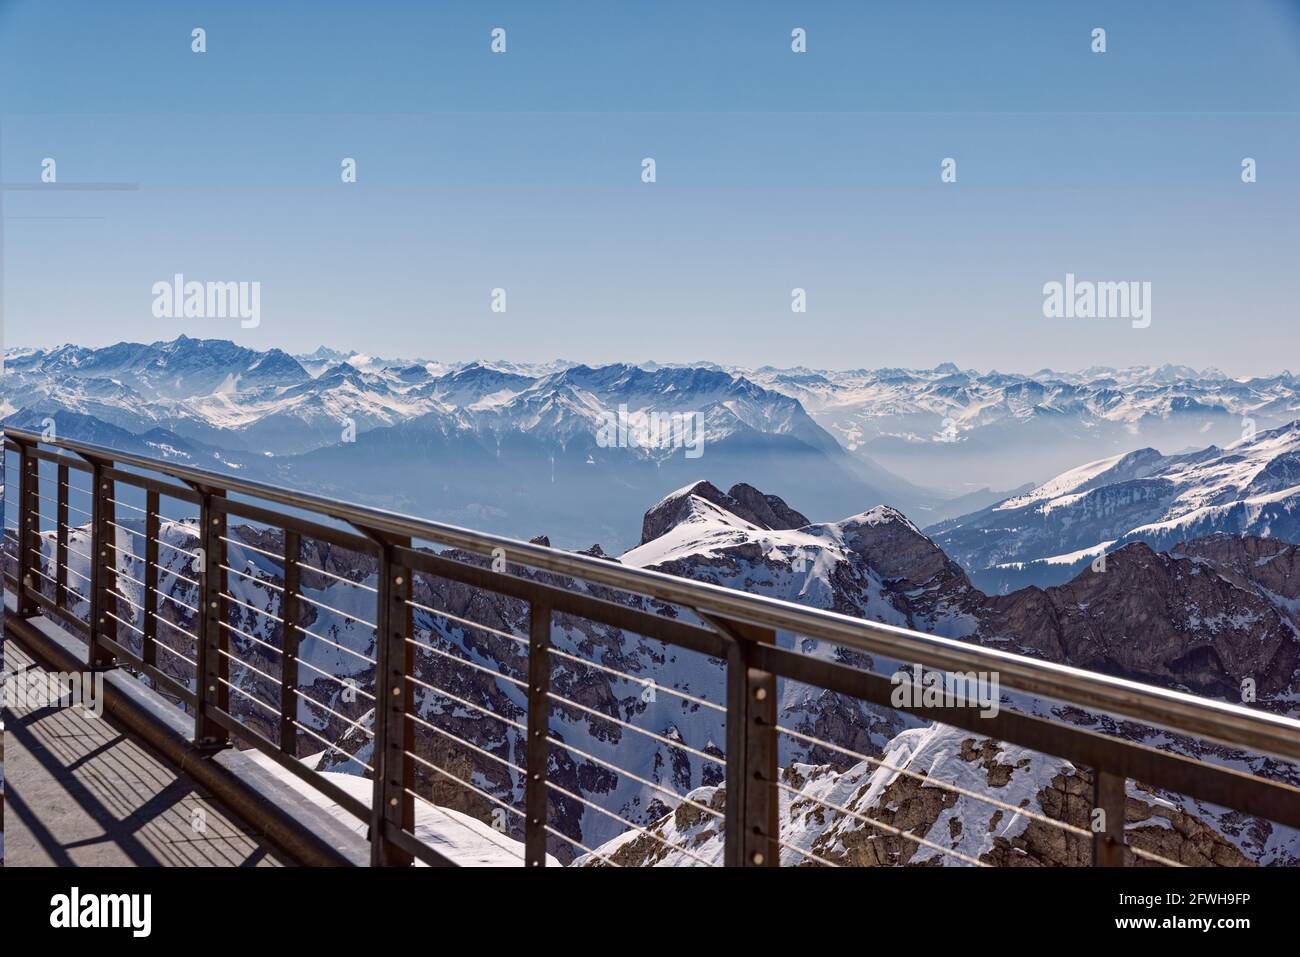 Terrasse balcon santis, surplombant le paysage de montagne imposant, dans la journée avec le soleil lumineux et ciel sans nuages, les montagnes suisses sont populaires de Banque D'Images